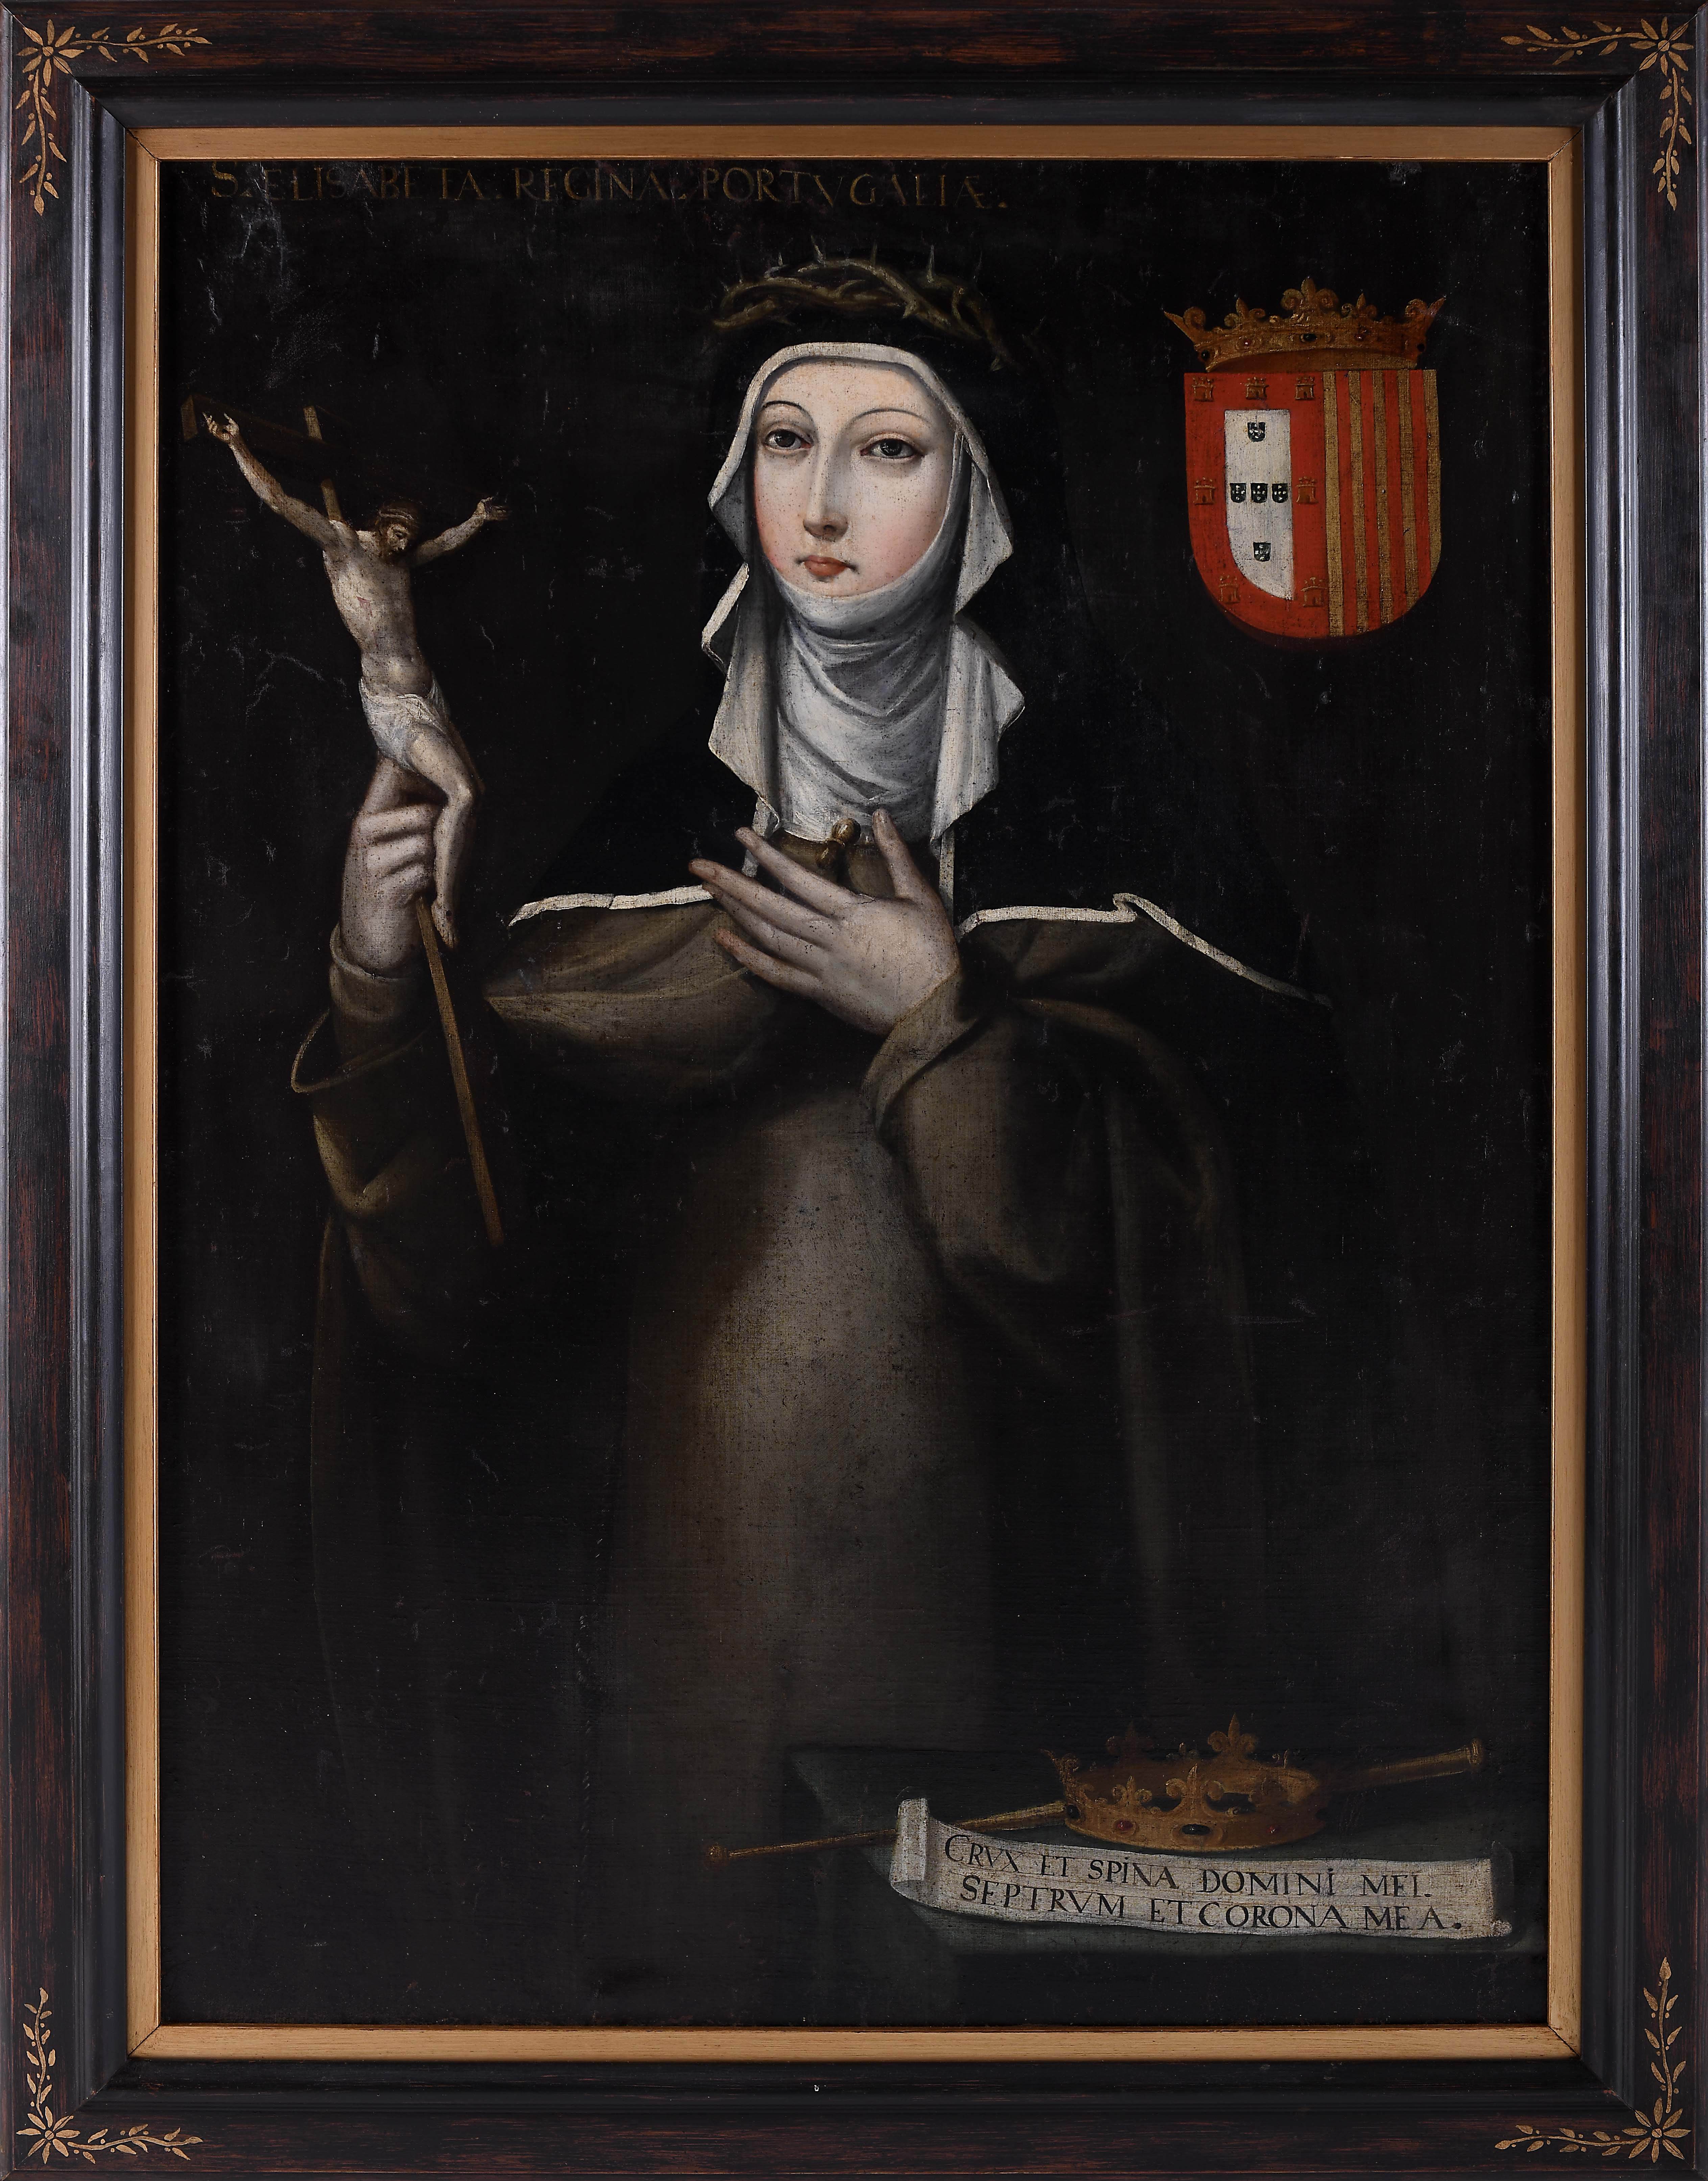 Saint Elizabeth of Portugal